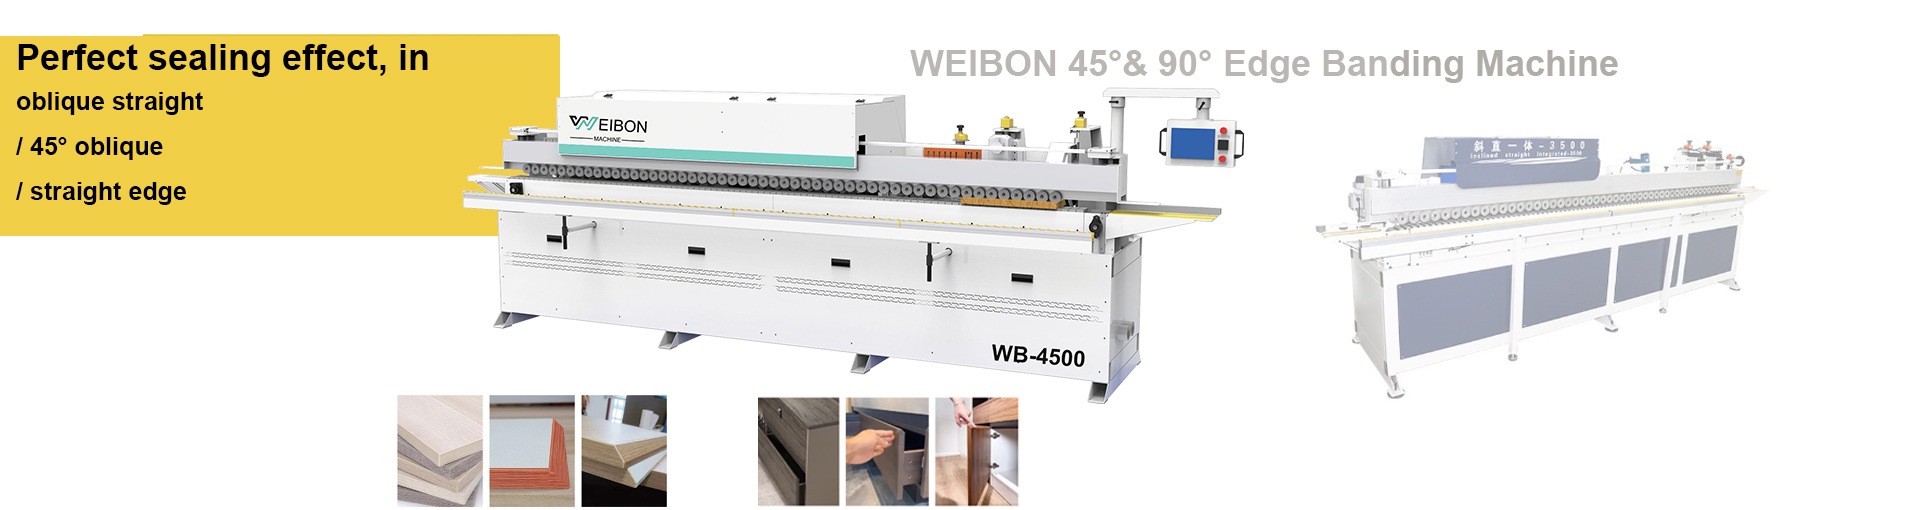 weibon edge bander machine 4500